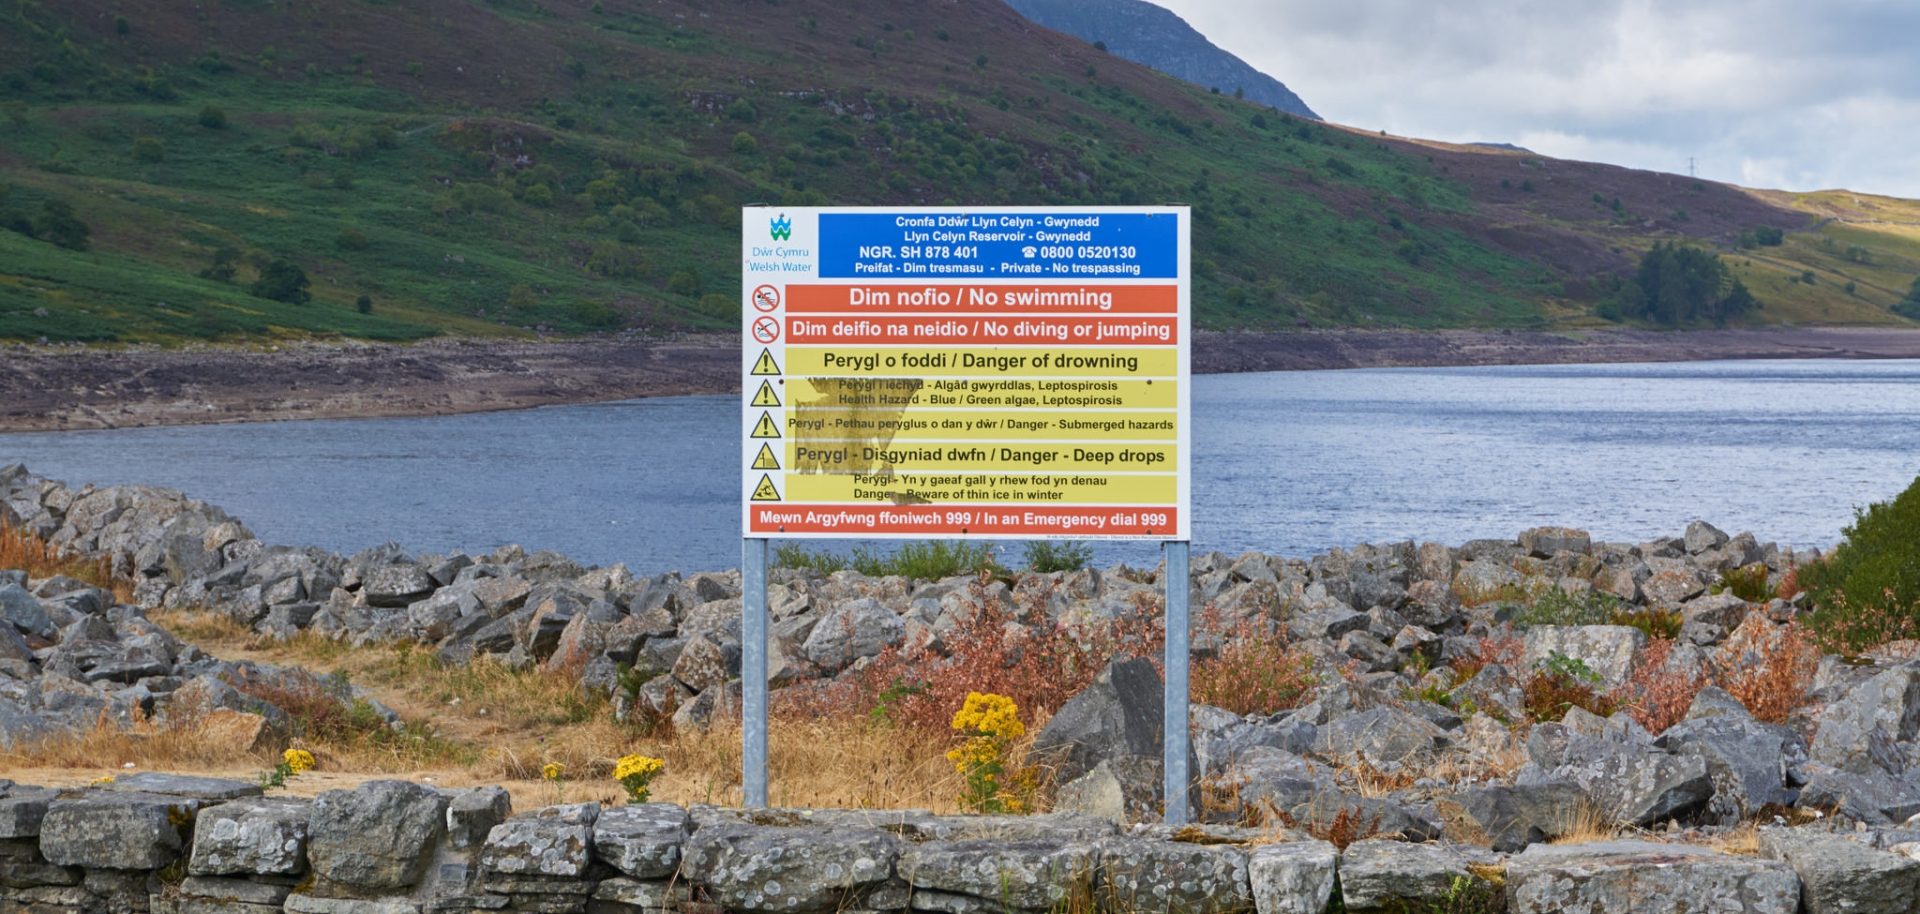 Warning signs at Afon Tryweryn